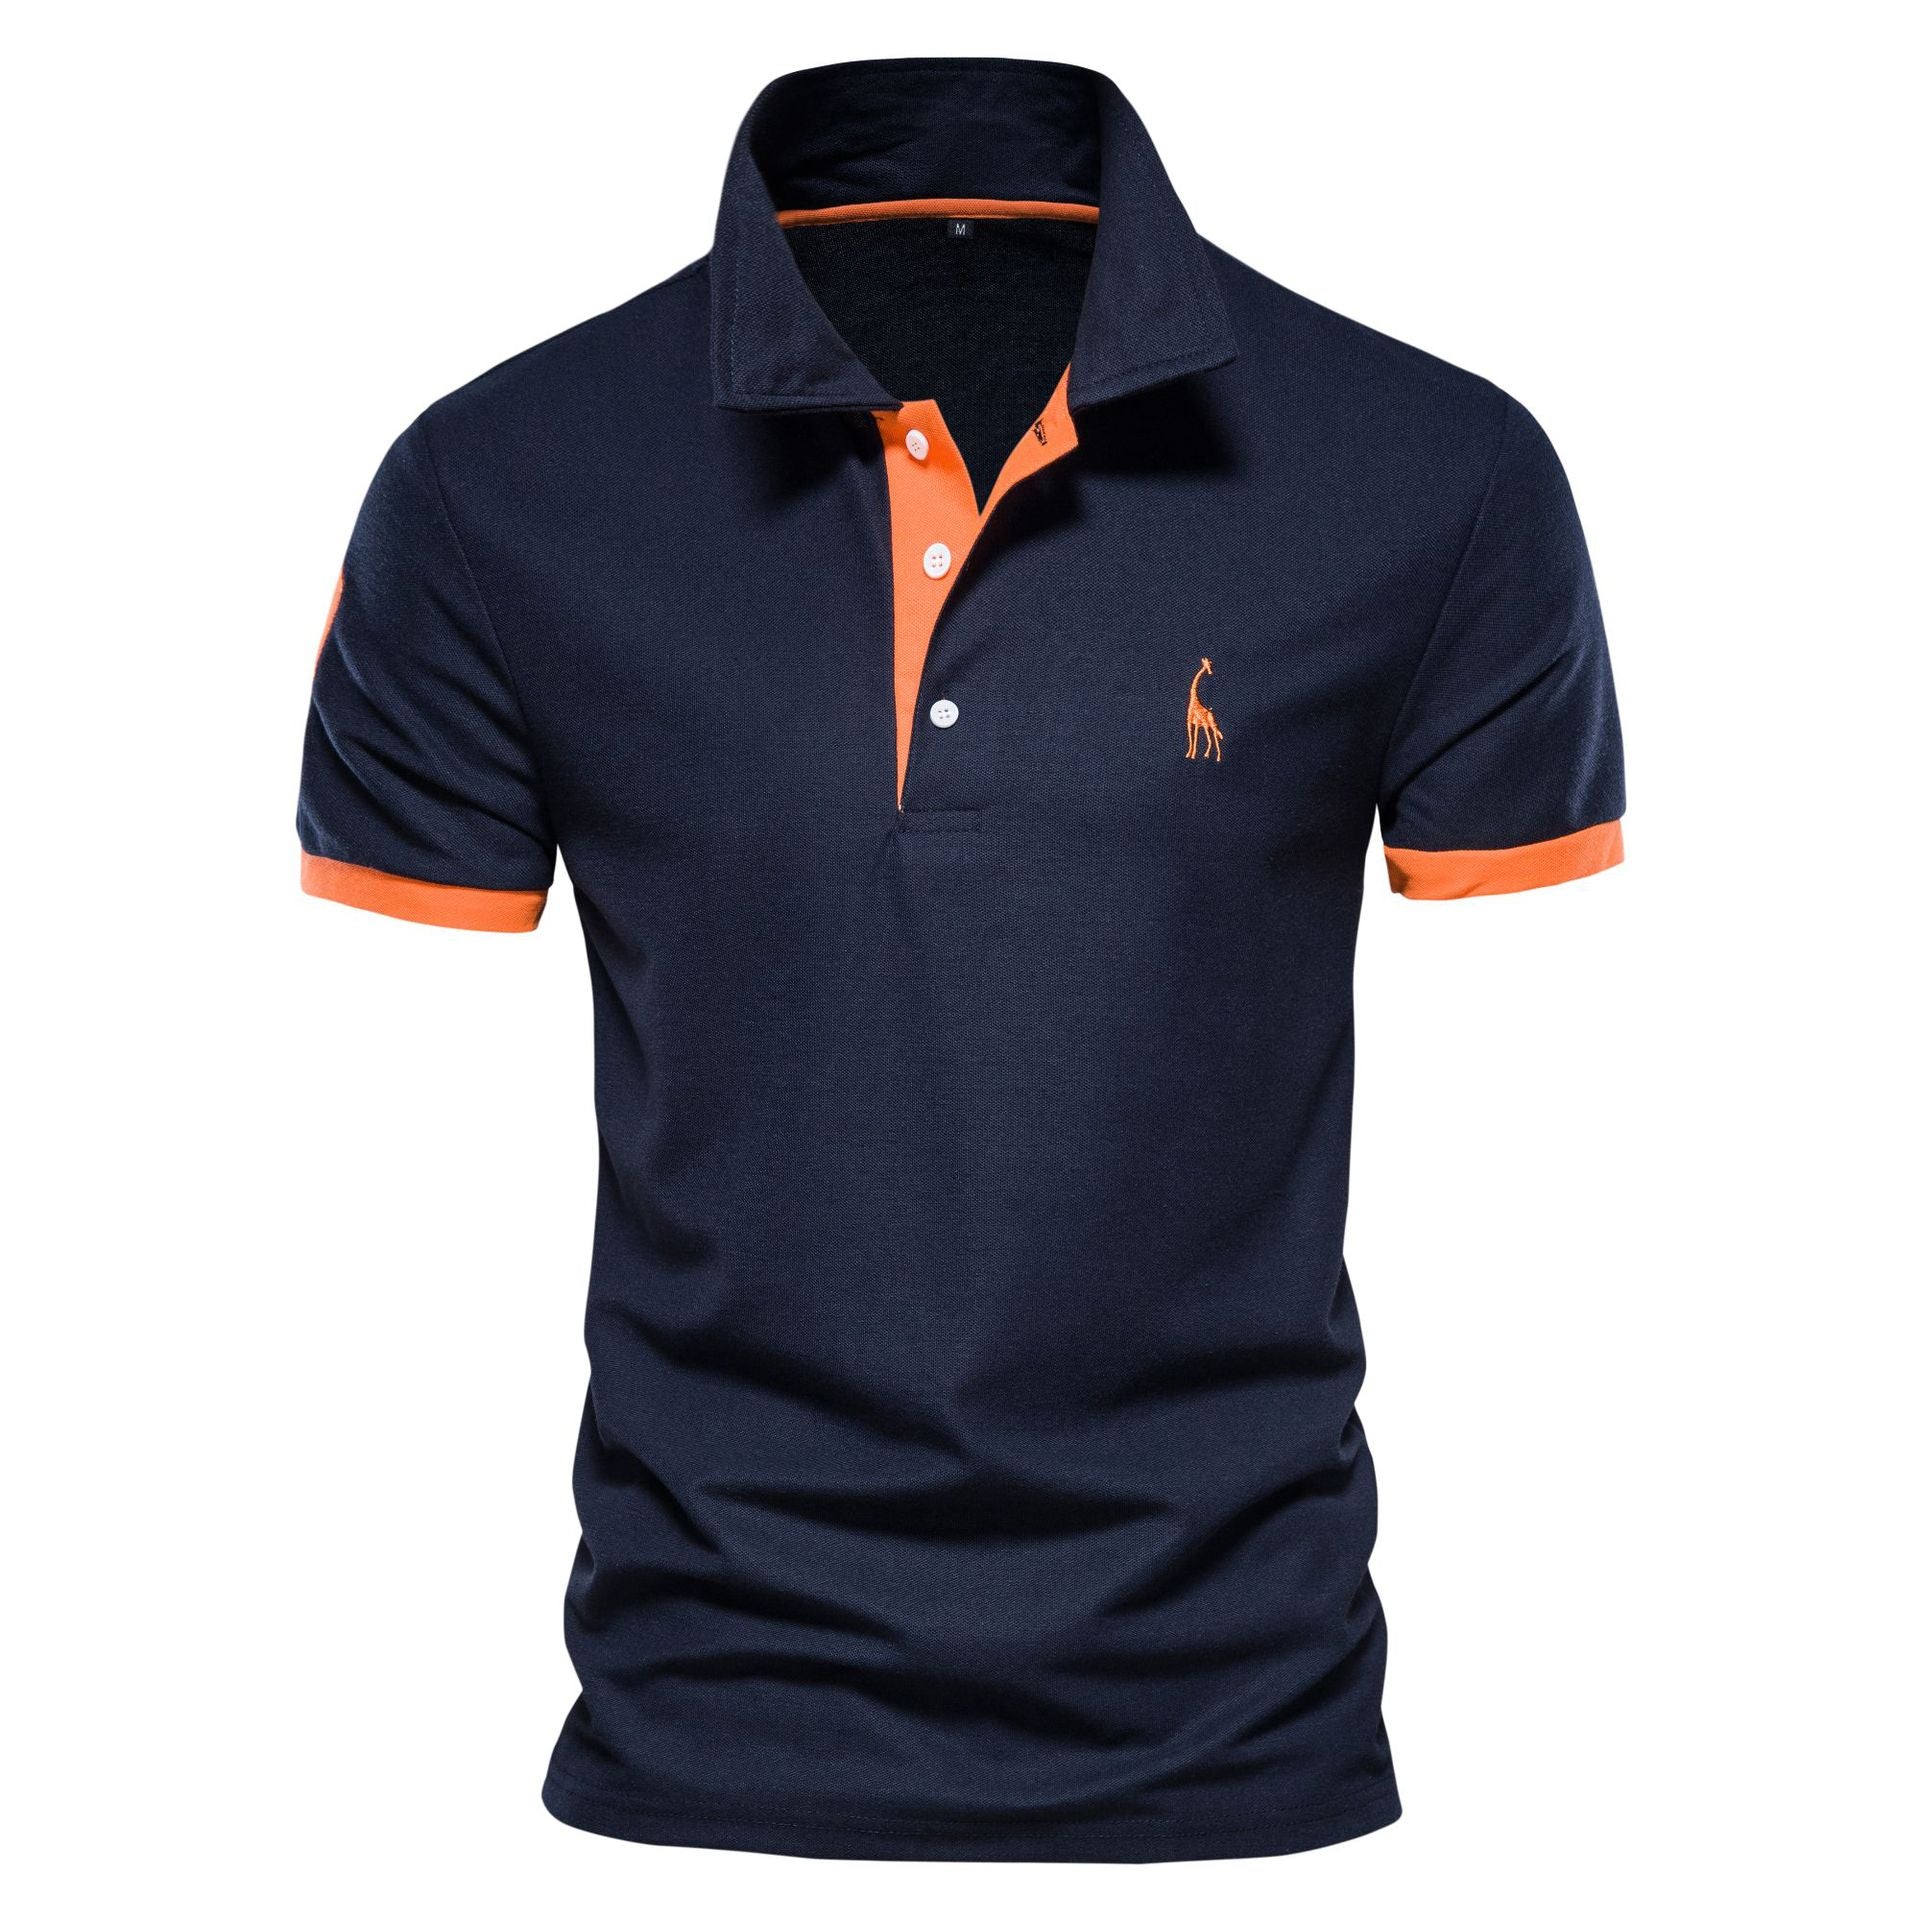 4 Pieces Men's Premium Cotton Blend Casual Polo Shirts